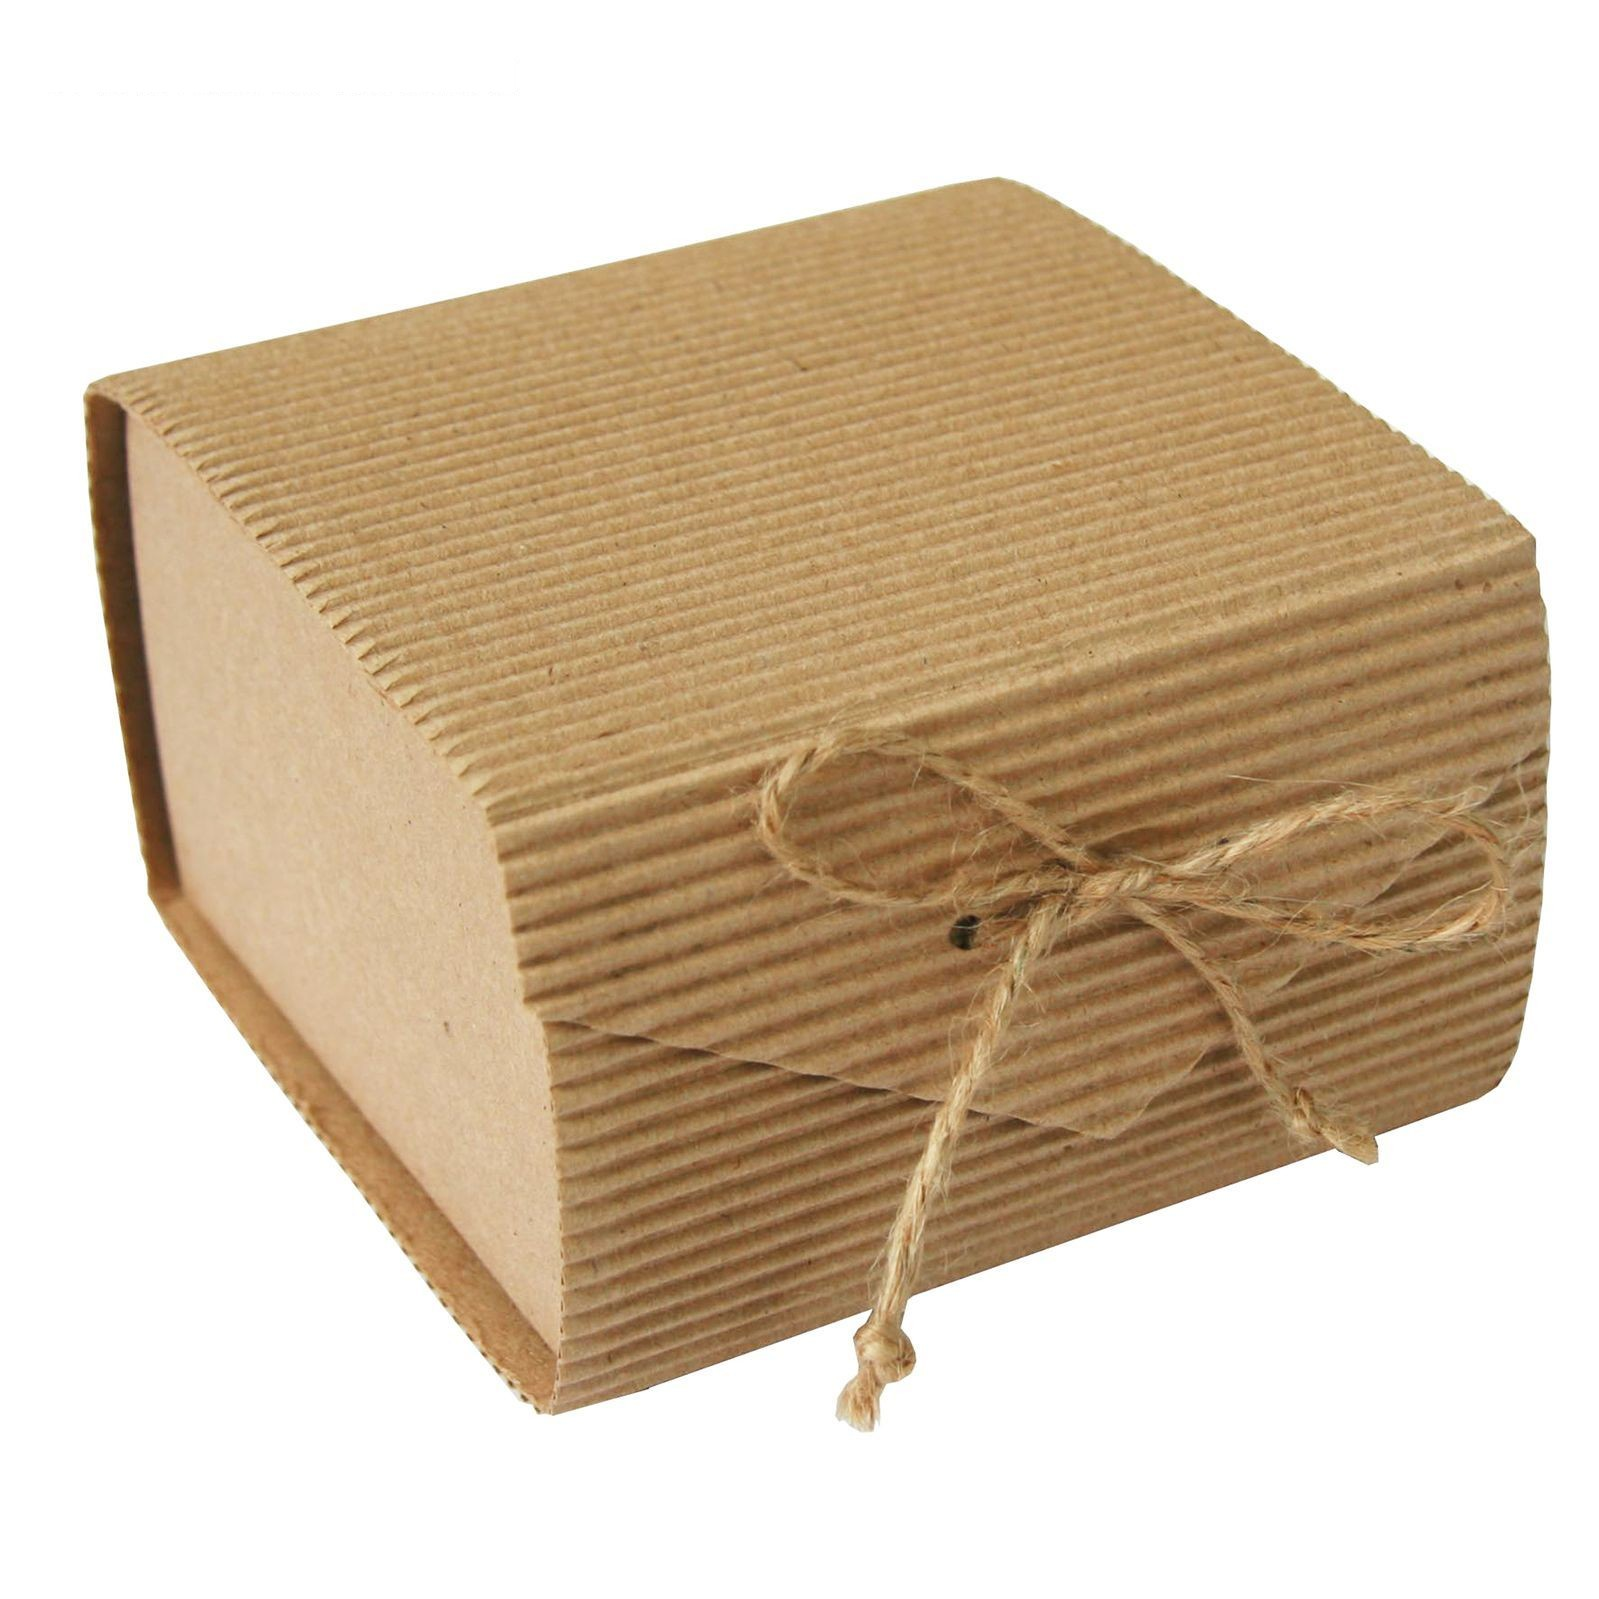 Картонная коробка для подарка. Картонные коробки для подарков. Коробка гофрокартон. Упаковка из гофрированного картона.